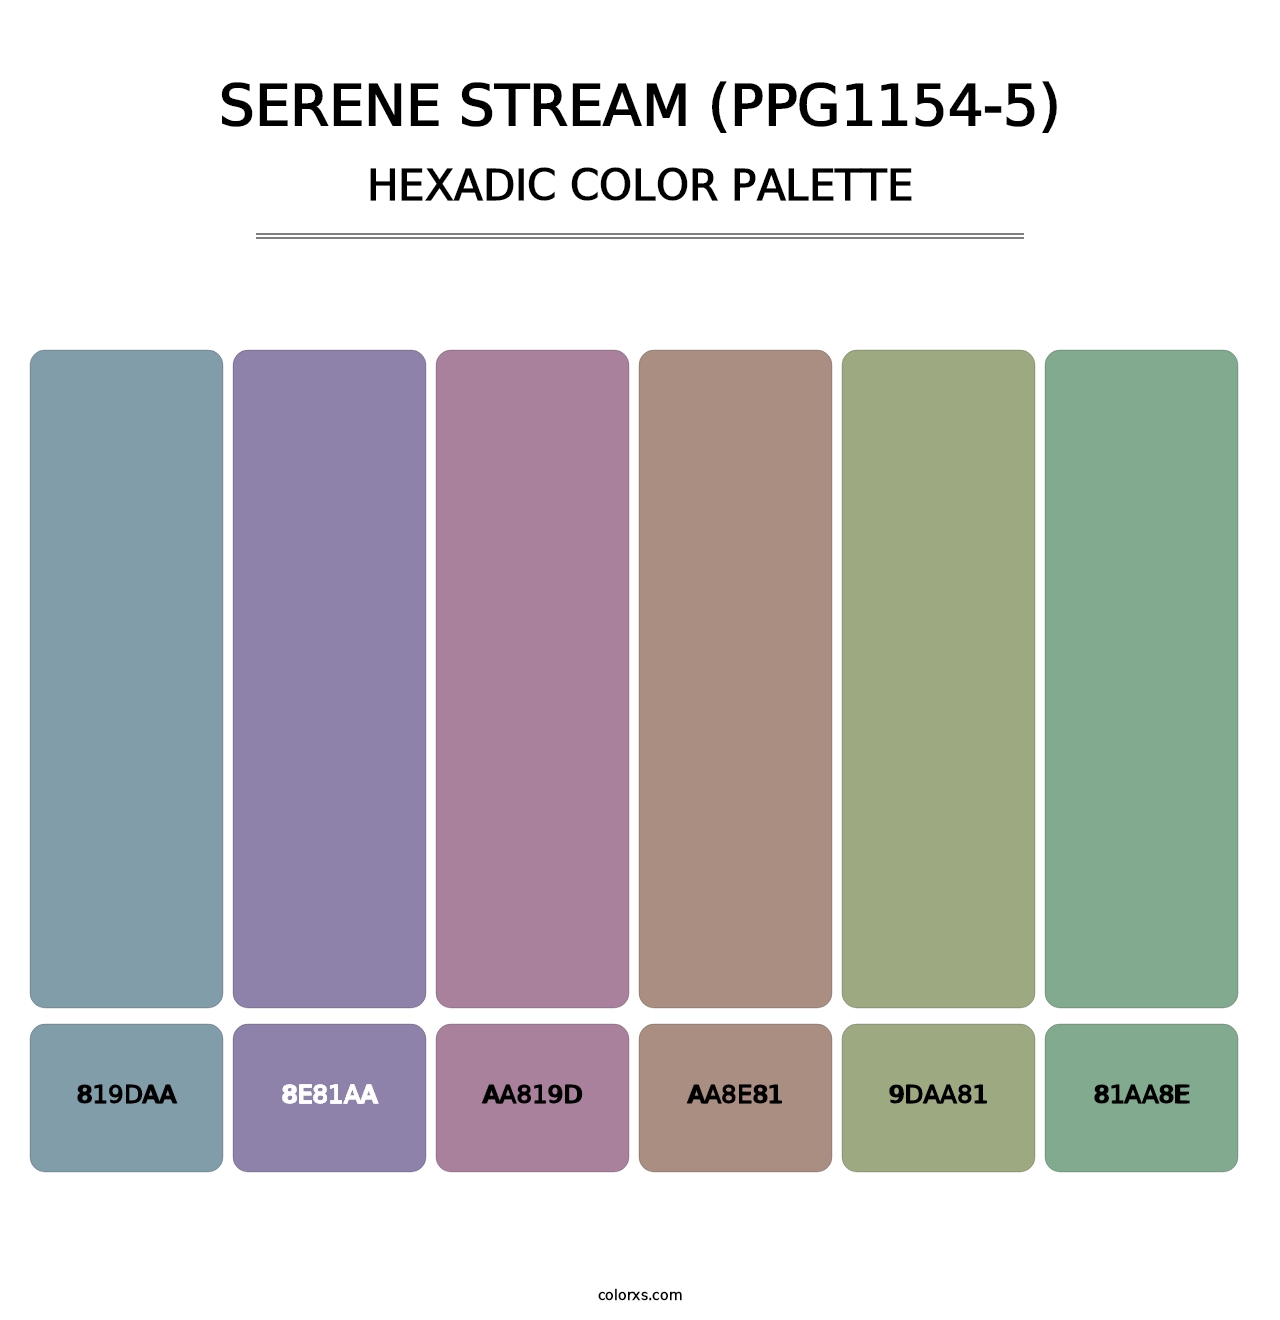 Serene Stream (PPG1154-5) - Hexadic Color Palette